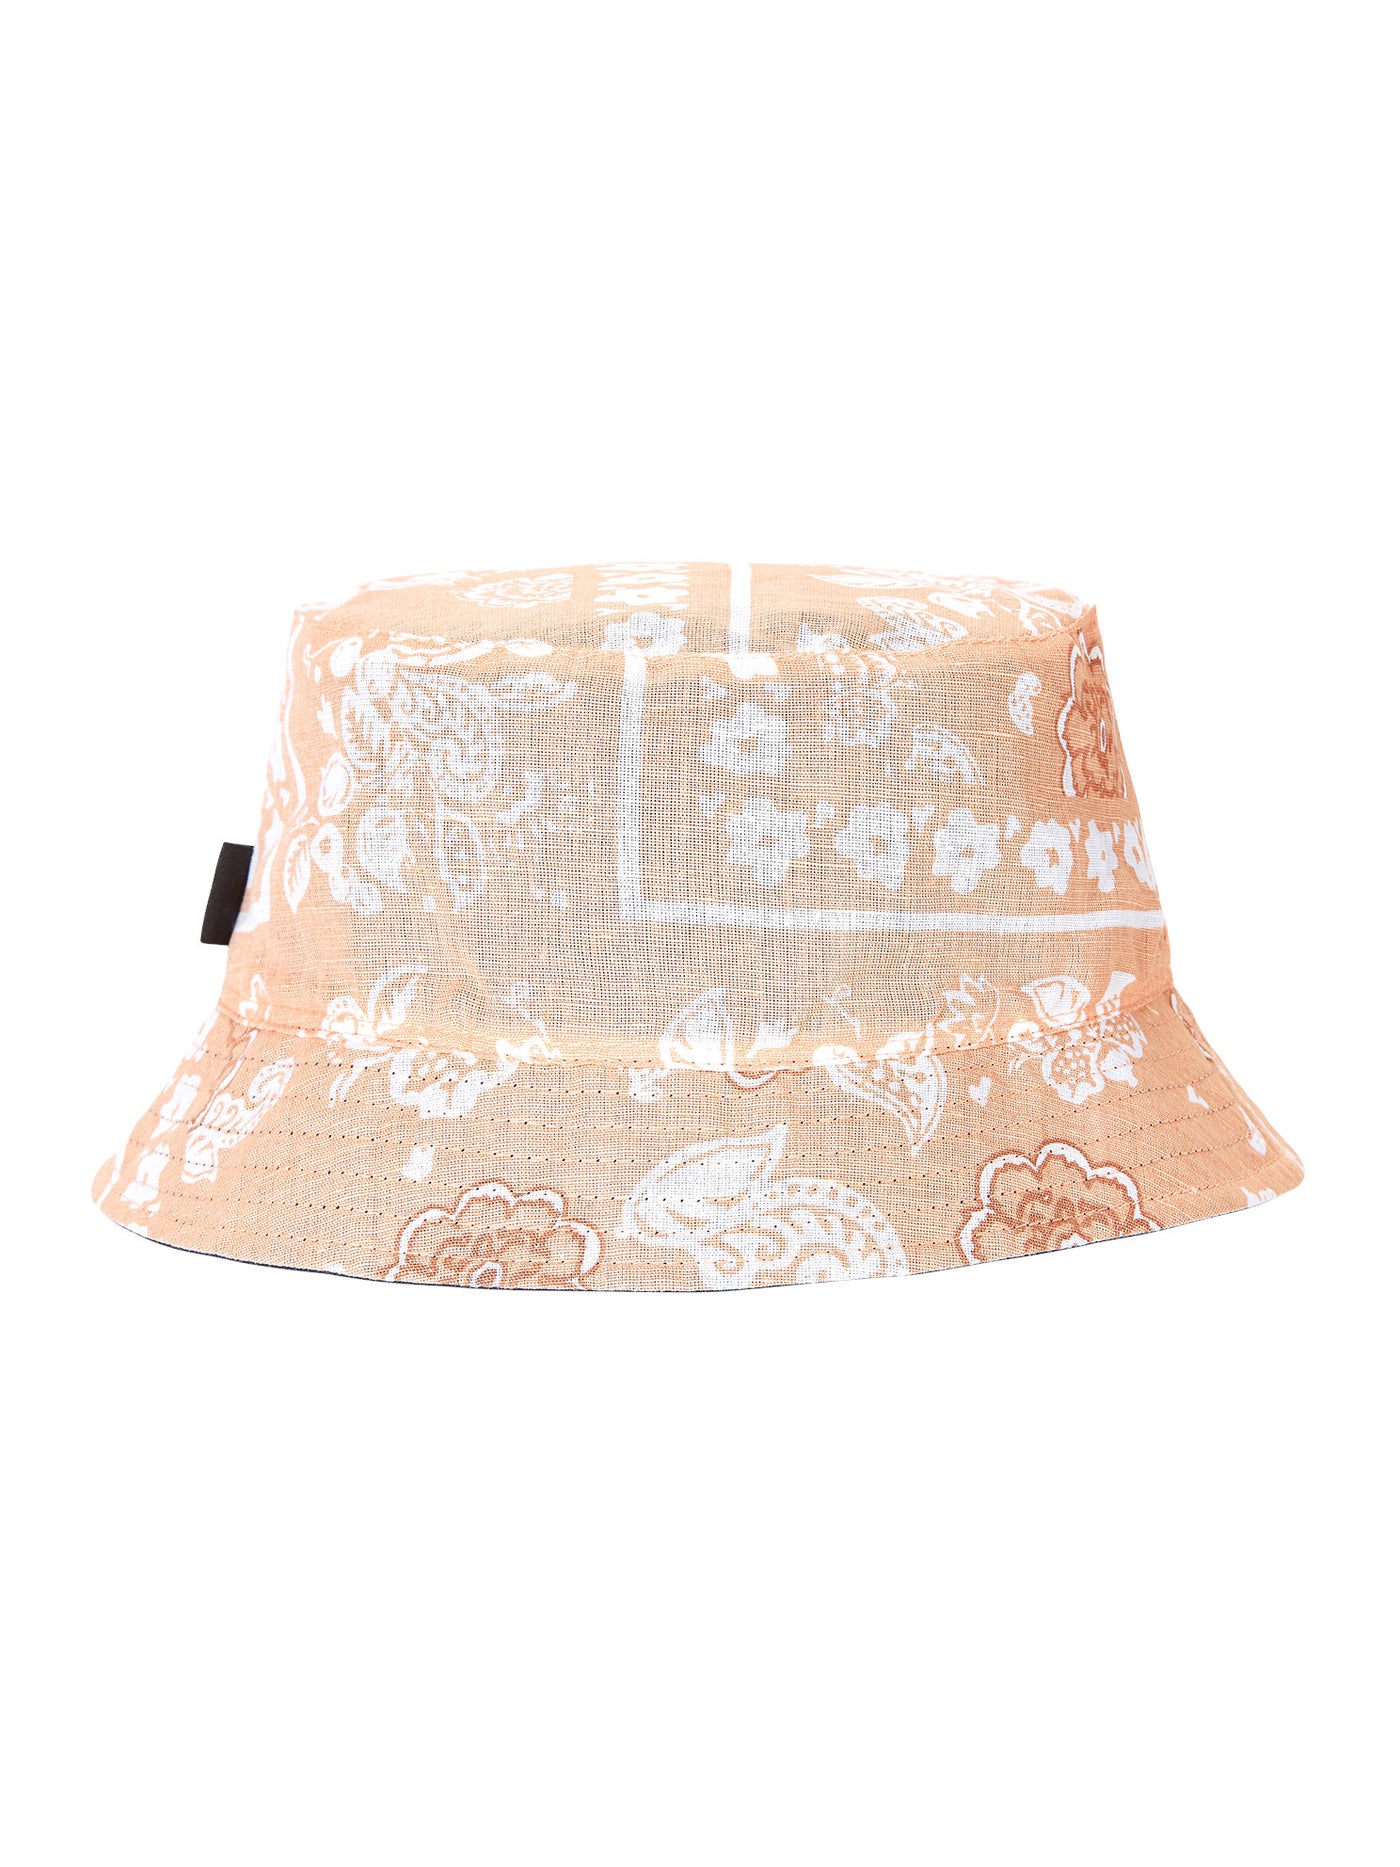 Okori 2in1 Bucket Hat - Summer hat